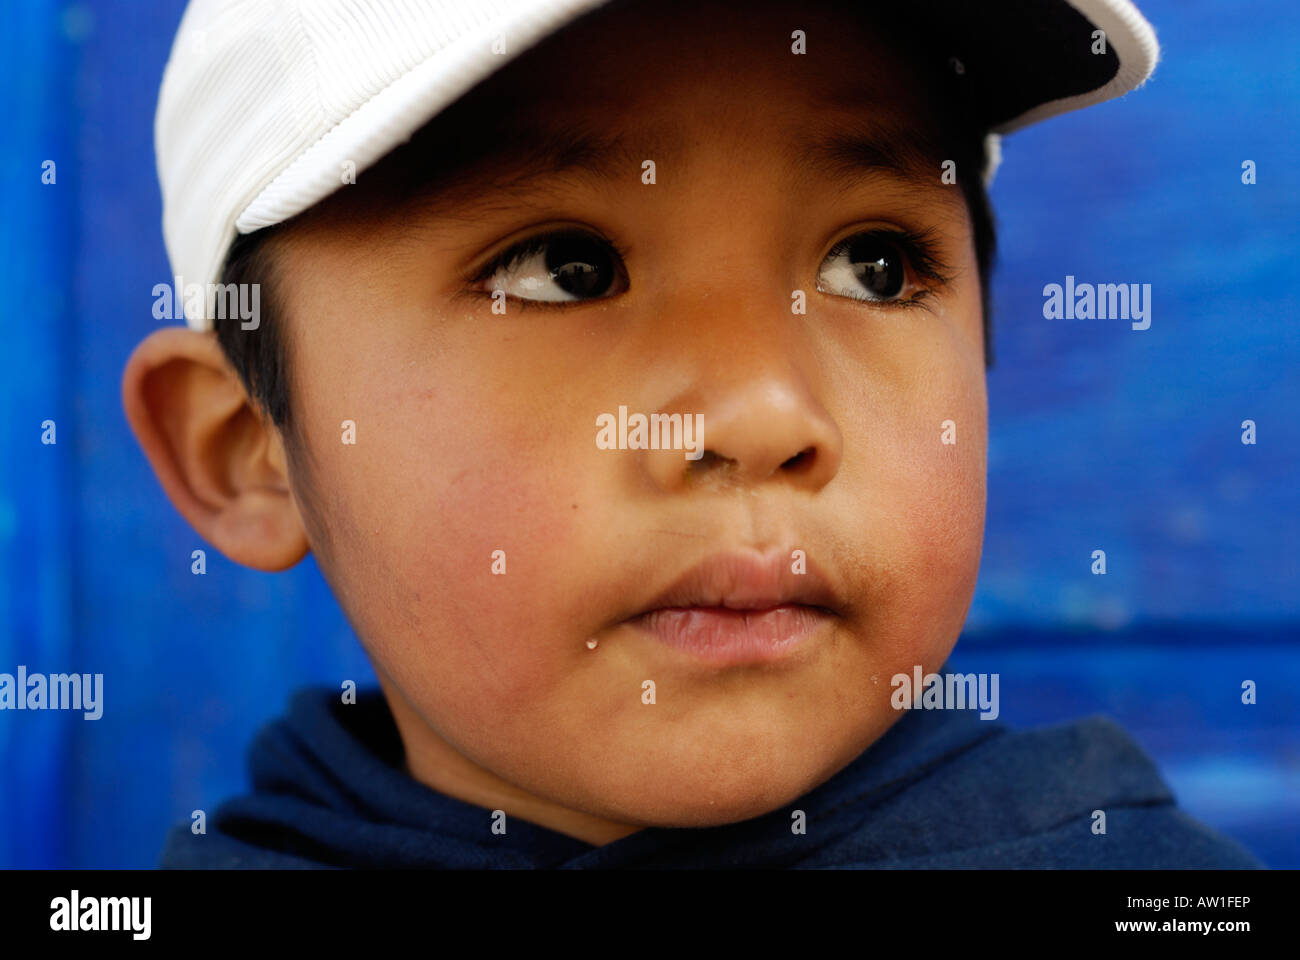 Kleiner Junge Porträt, Iruya, Provinz Salta, Argentinien, Südamerika Stockfoto